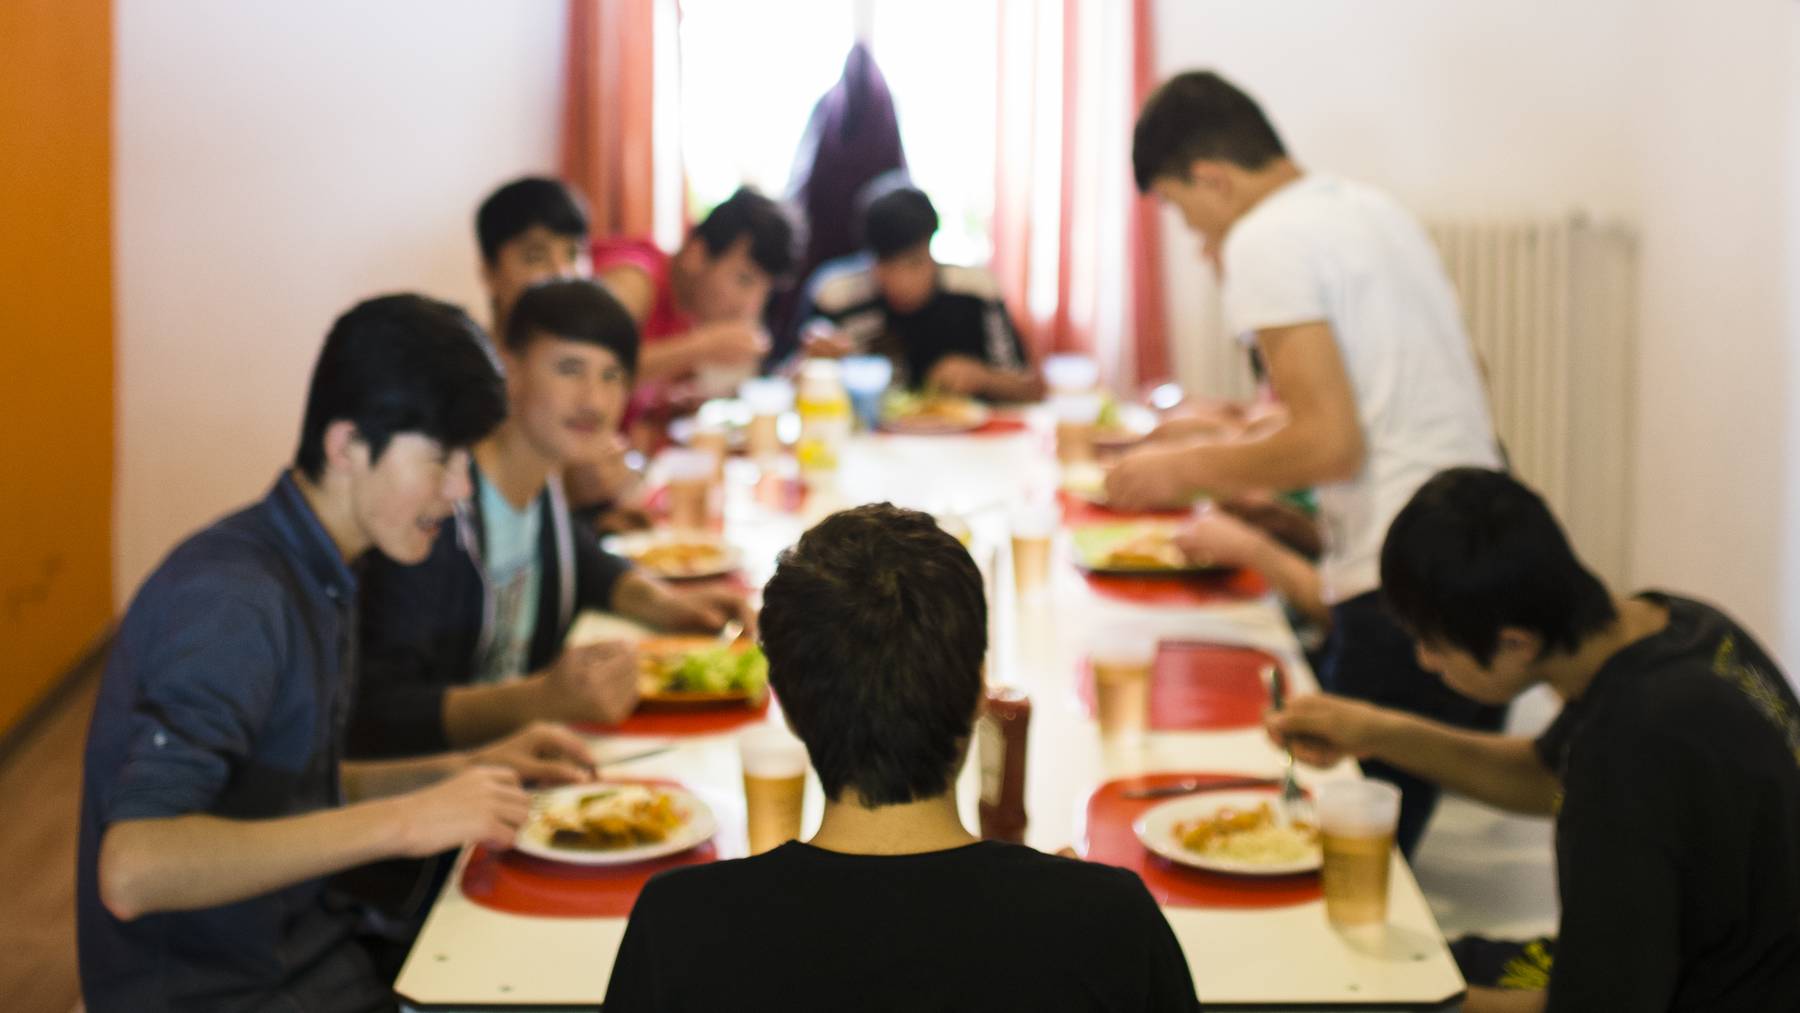 Unbegleitete minderjaehrige Asylsuchende (UMA) sitzen beim Mittagessen.